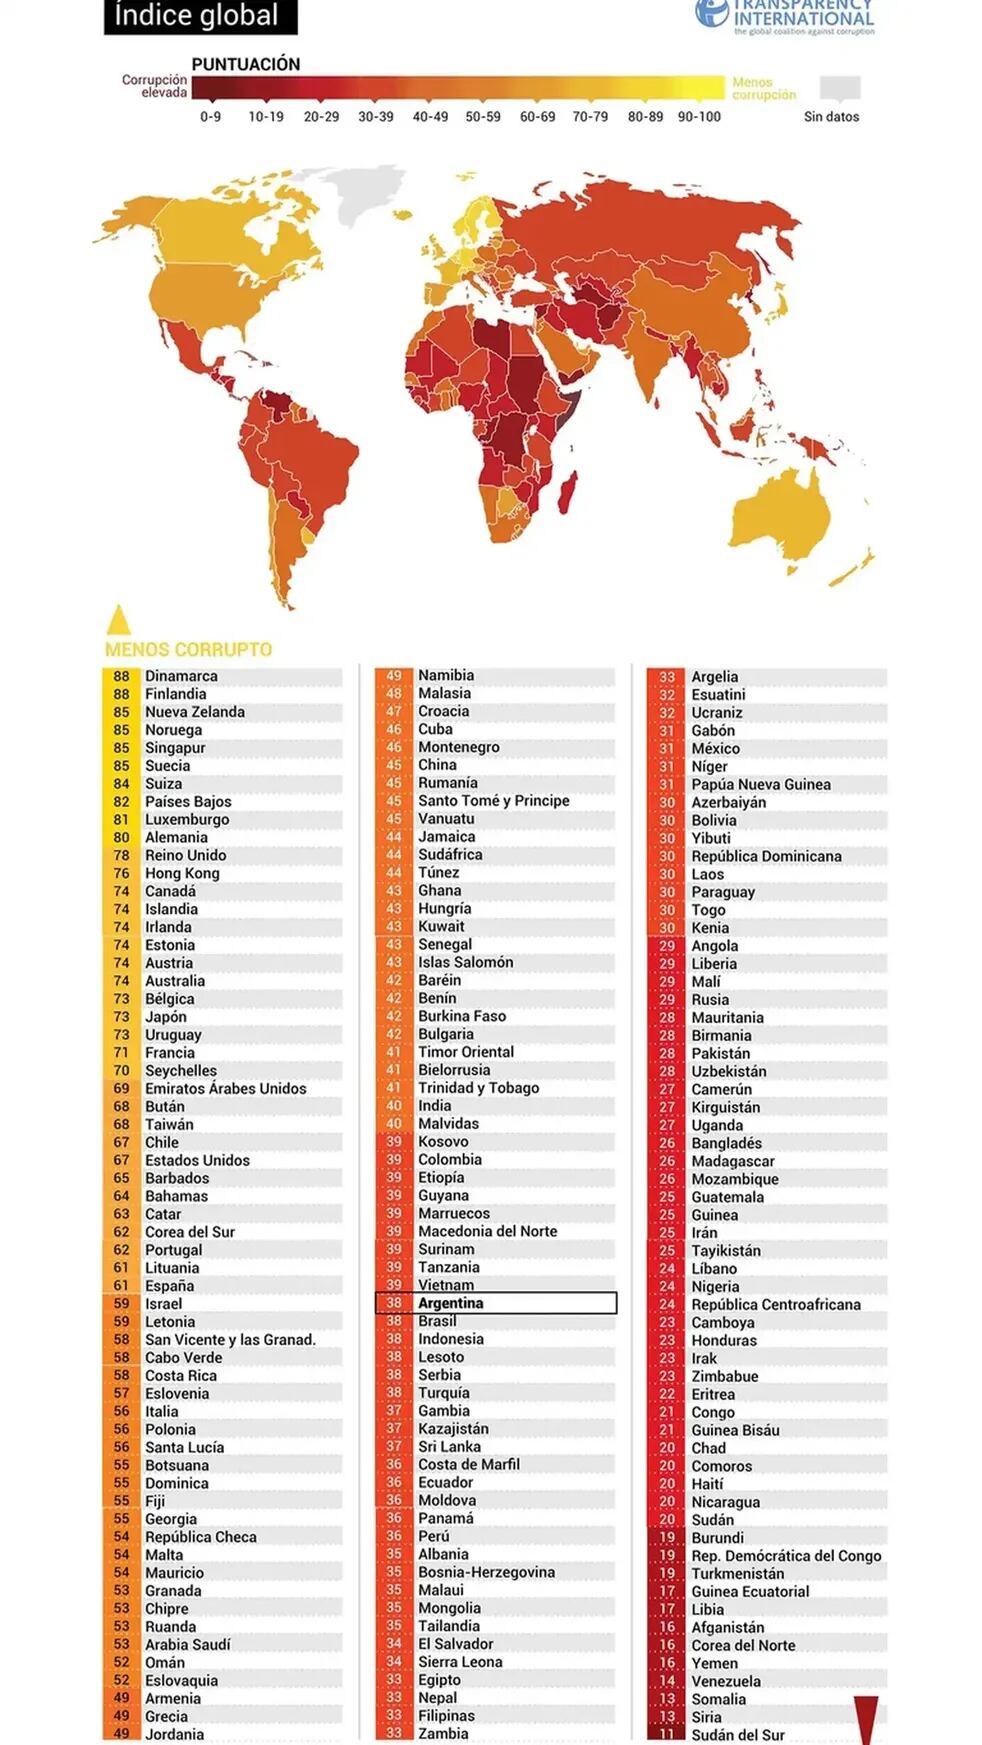 El listado completo de los países y sus posiciones finales en el ranking anticorrupción.